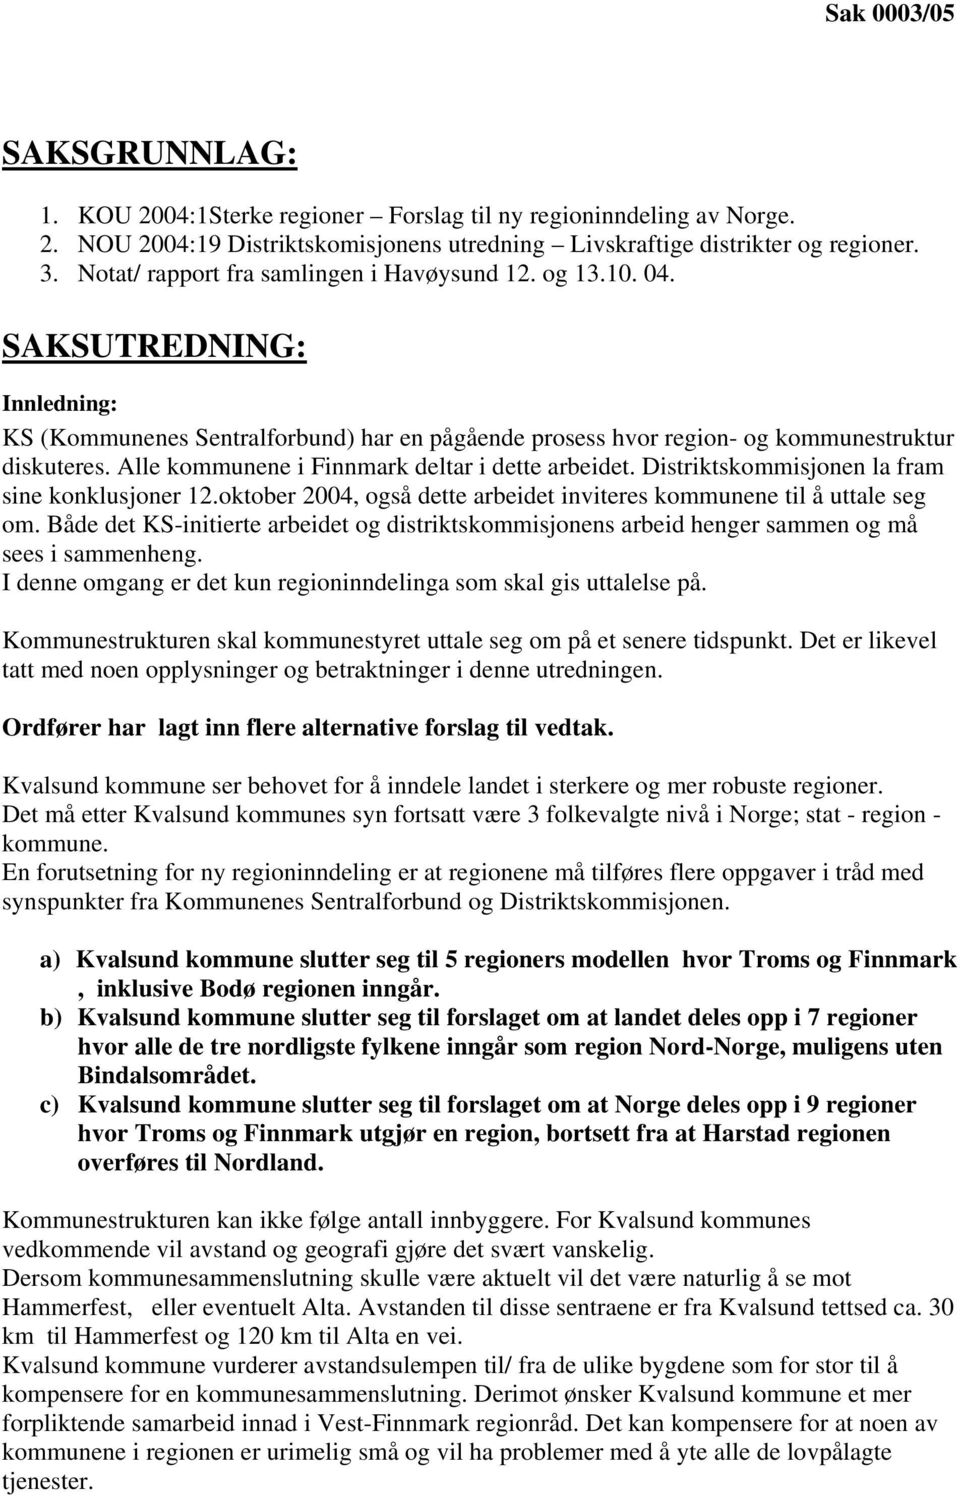 Alle kommunene i Finnmark deltar i dette arbeidet. Distriktskommisjonen la fram sine konklusjoner 12.oktober 2004, også dette arbeidet inviteres kommunene til å uttale seg om.